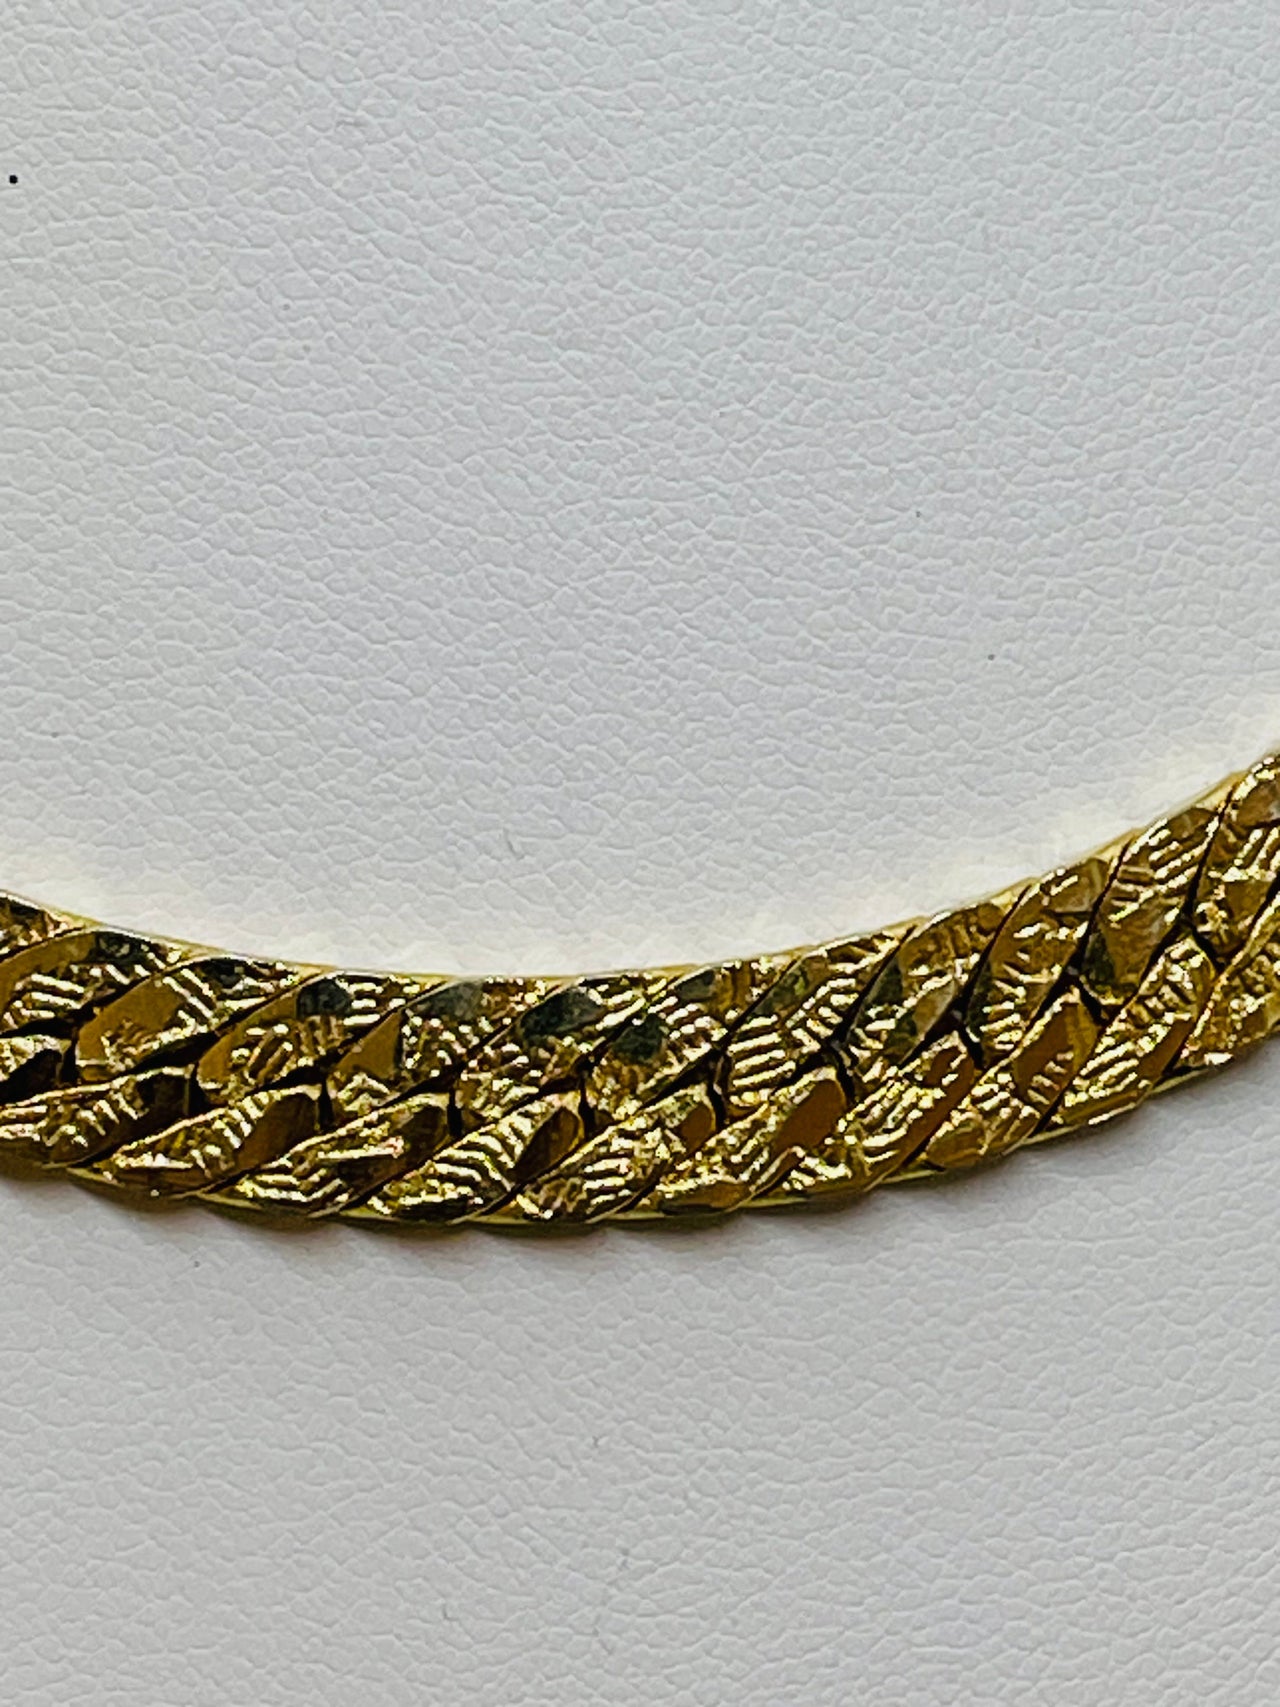 Wide Gold Chain Devil's Details 